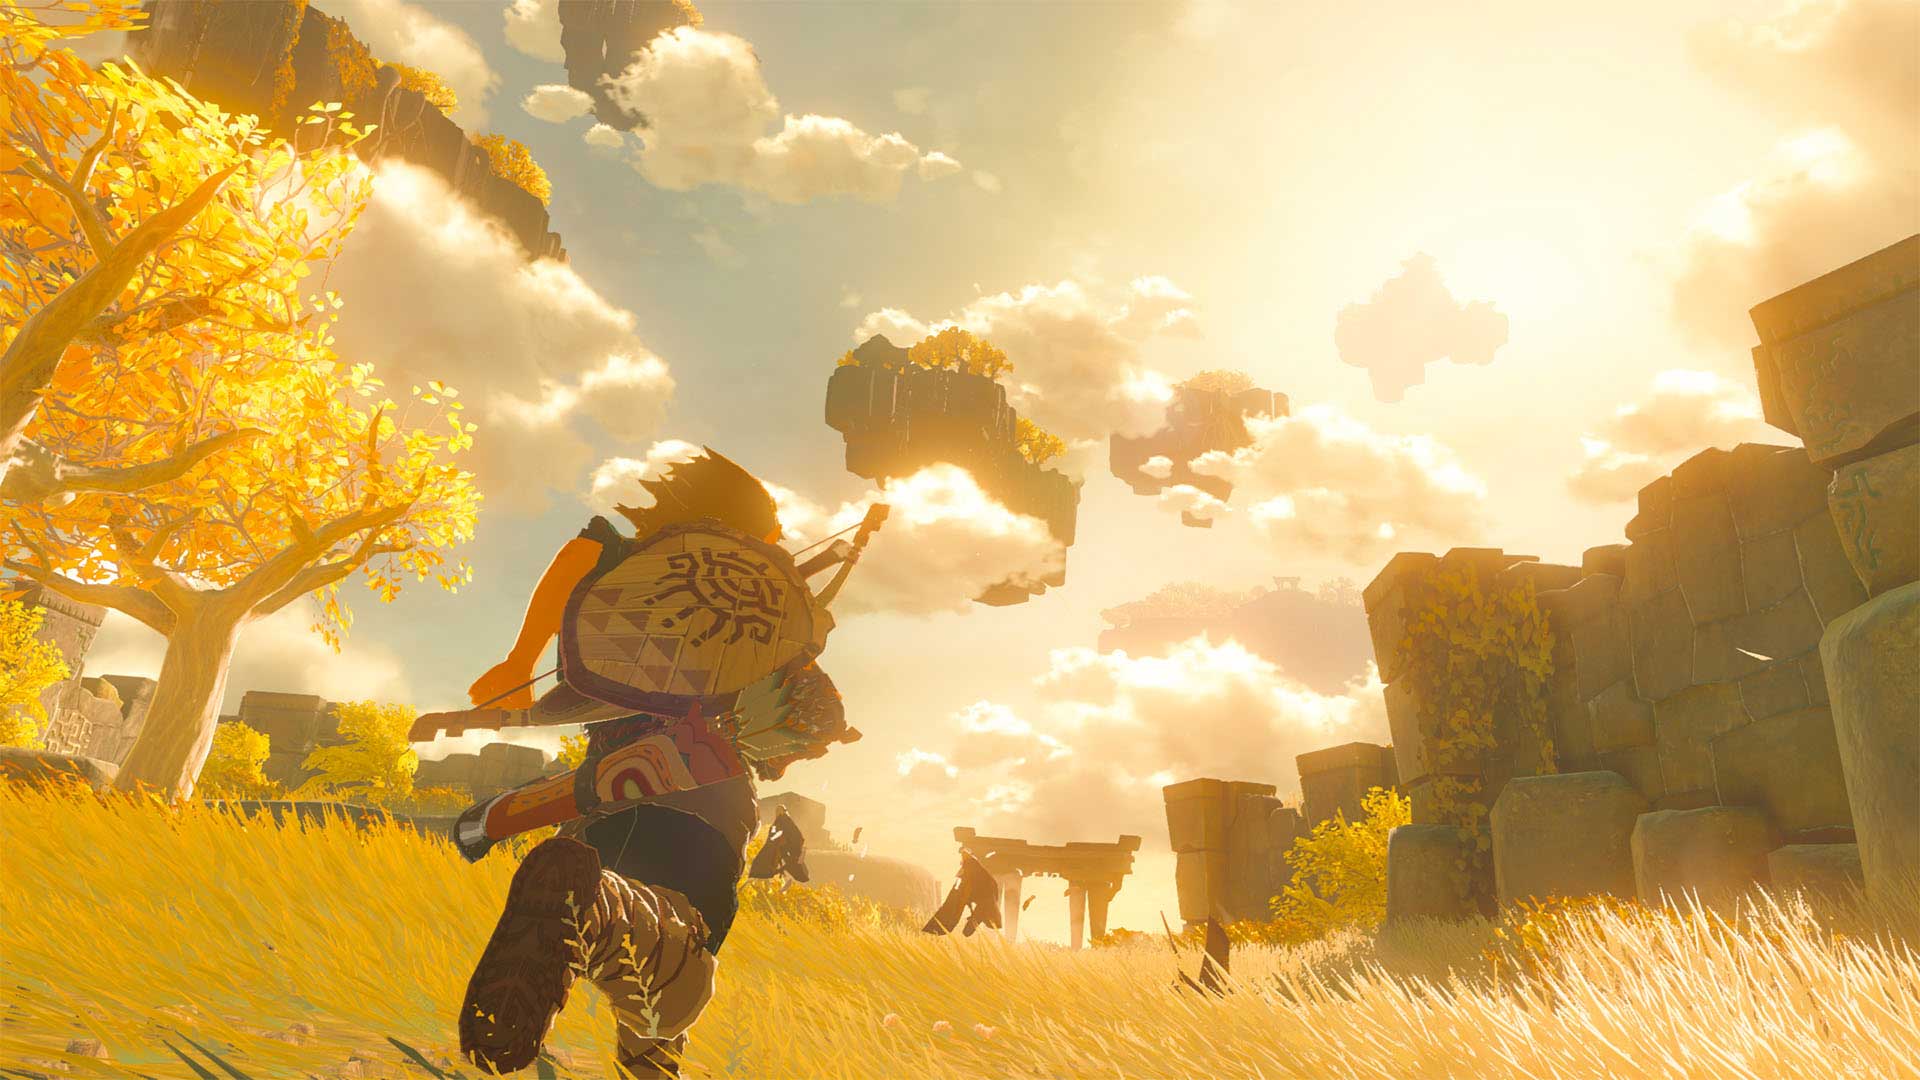 لینک در حال دویدن زیر آفتاب و ابرهای آسمان در دنباله بازی The Legend of Zelda: Breath of the Wild نینتندو